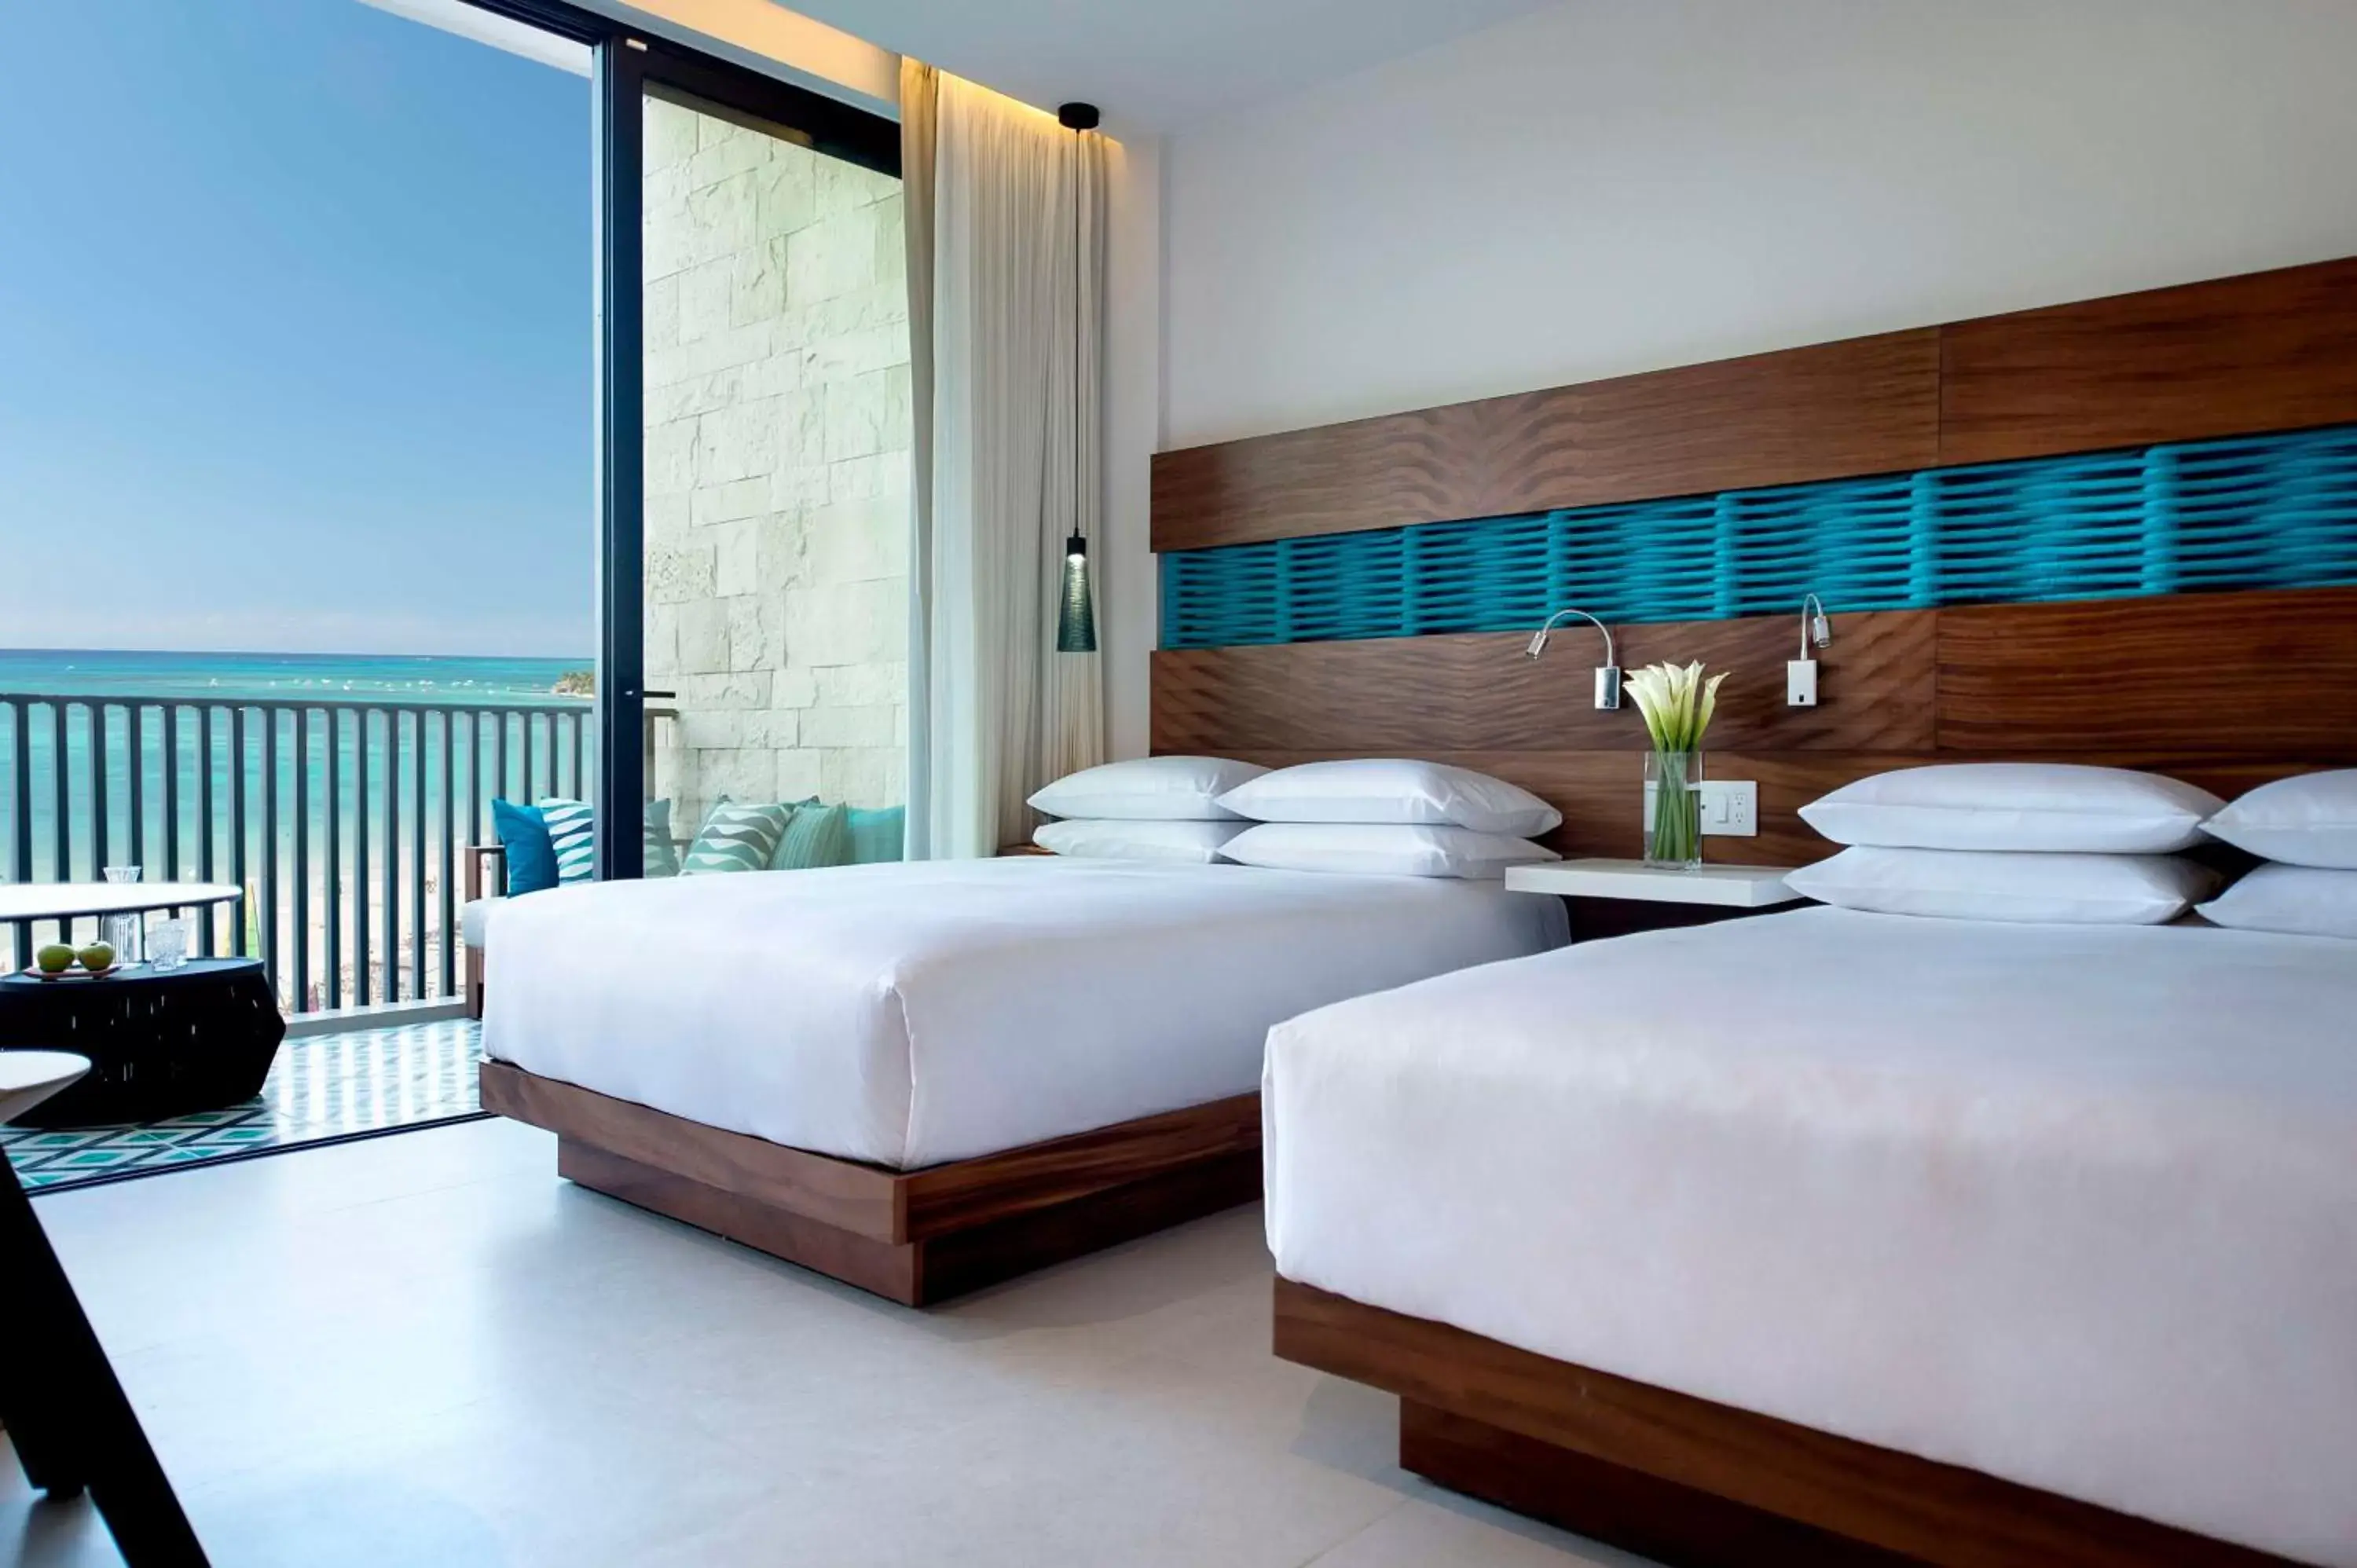 Bedroom, Bed in Grand Hyatt Playa del Carmen Resort